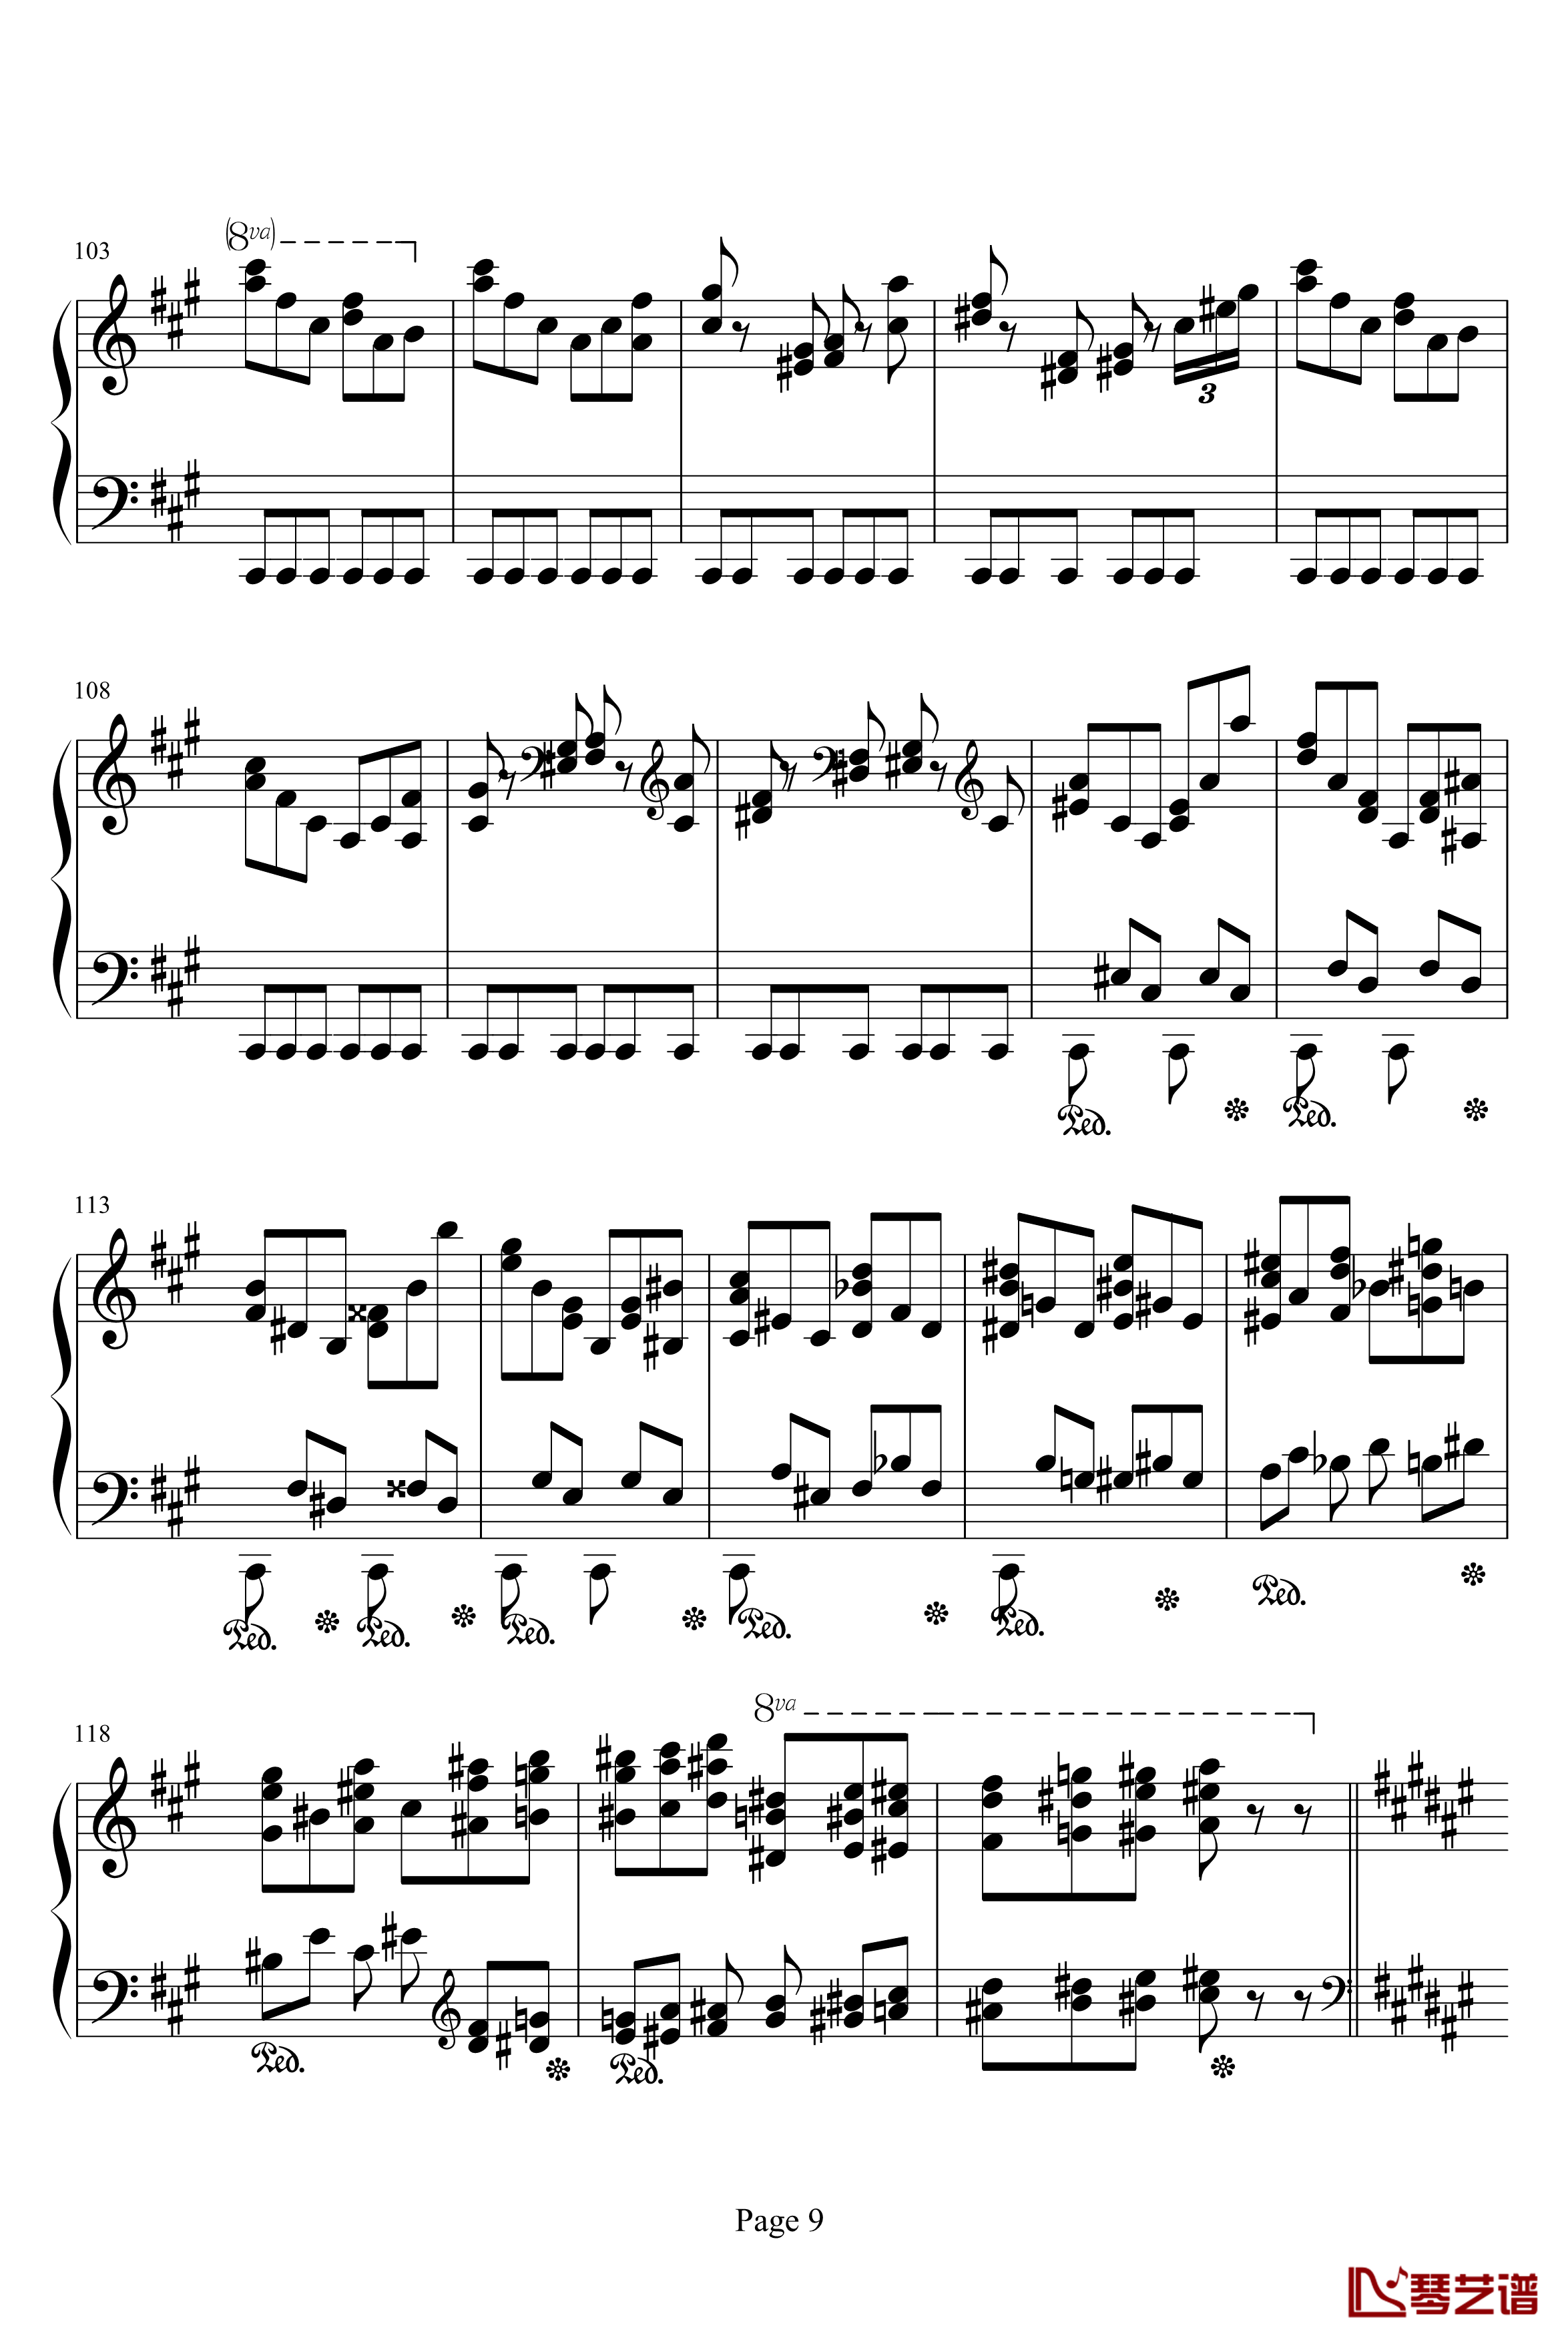 李斯特音乐会练习曲之二钢琴谱-侏儒之舞-李斯特9